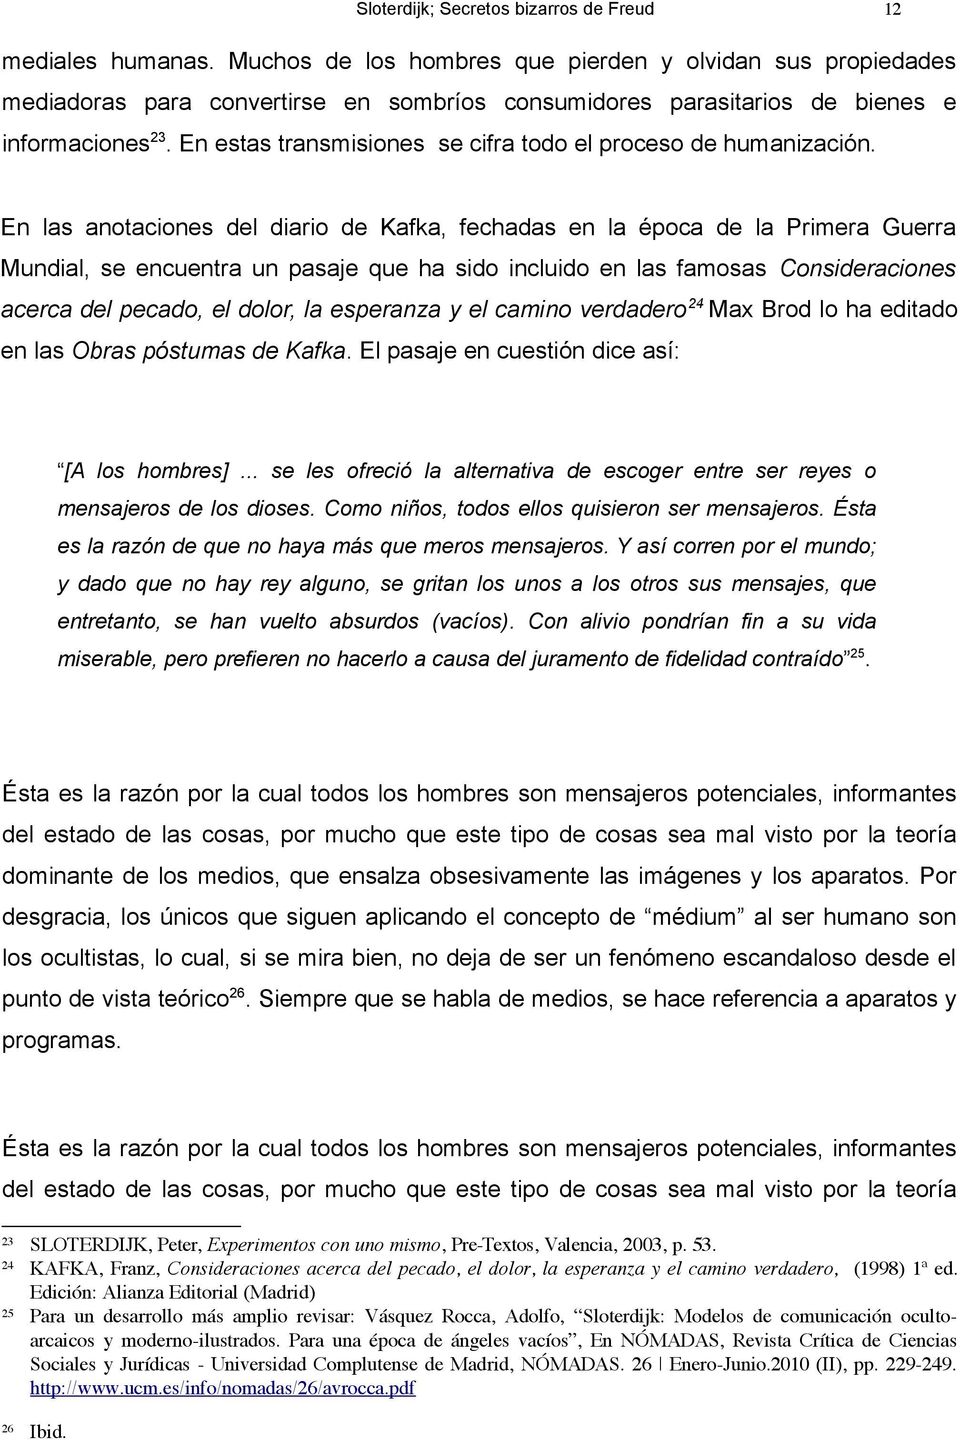 430 47 23 SLOTERDIJK, Peter, Experimentos con uno mismo, Pre-Textos, Valencia, 2003, p. 53.